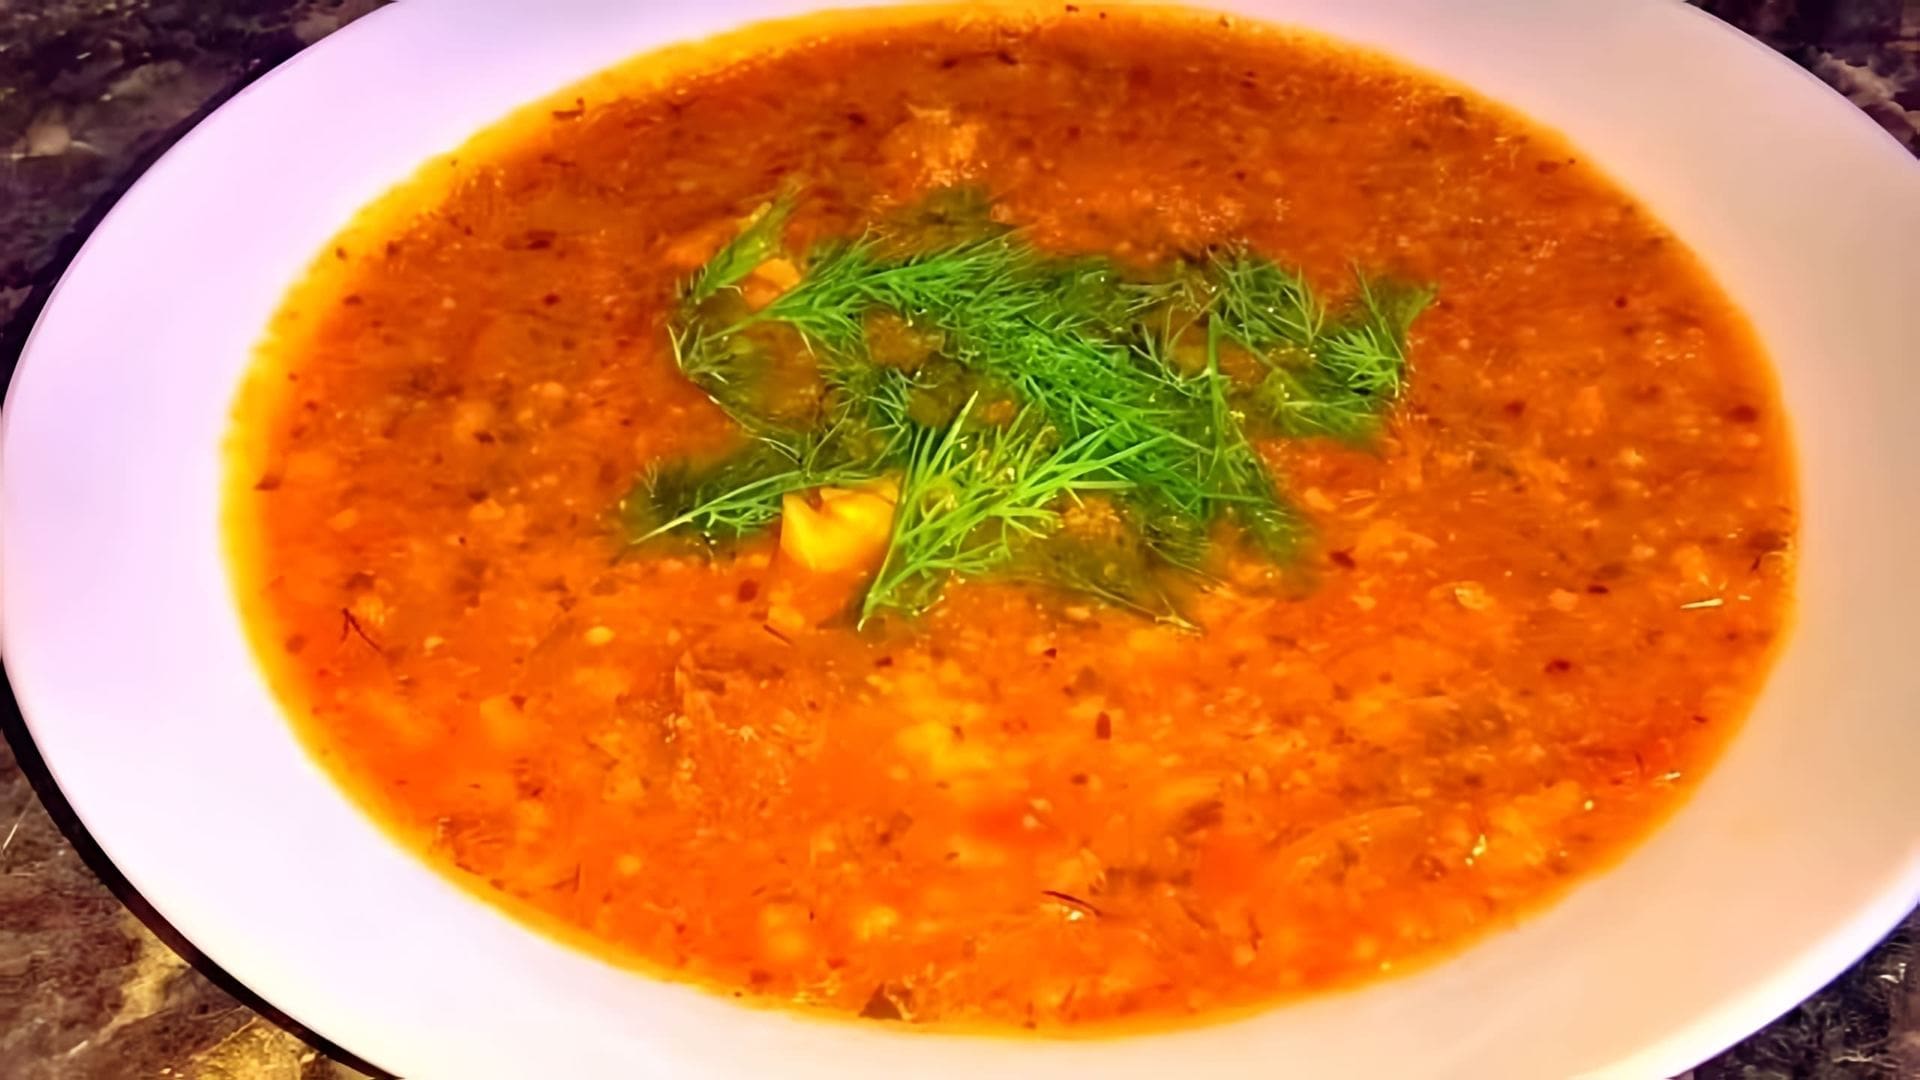 В этом видео демонстрируется процесс приготовления грузинского супа харчо